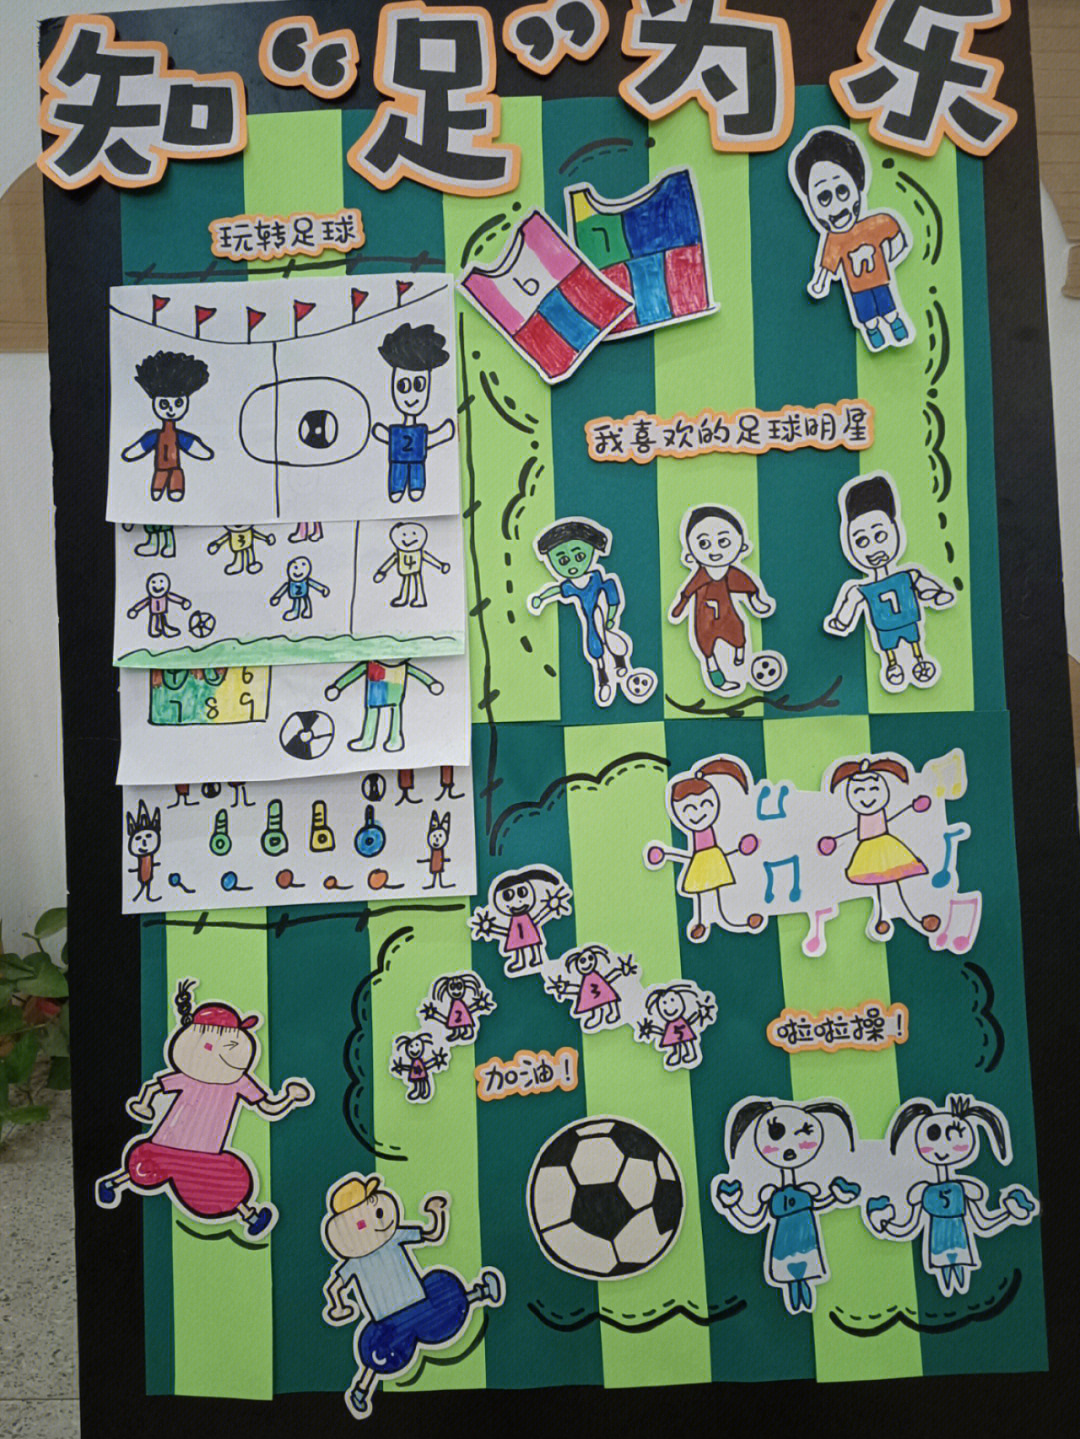 幼儿园足球展板内容图片